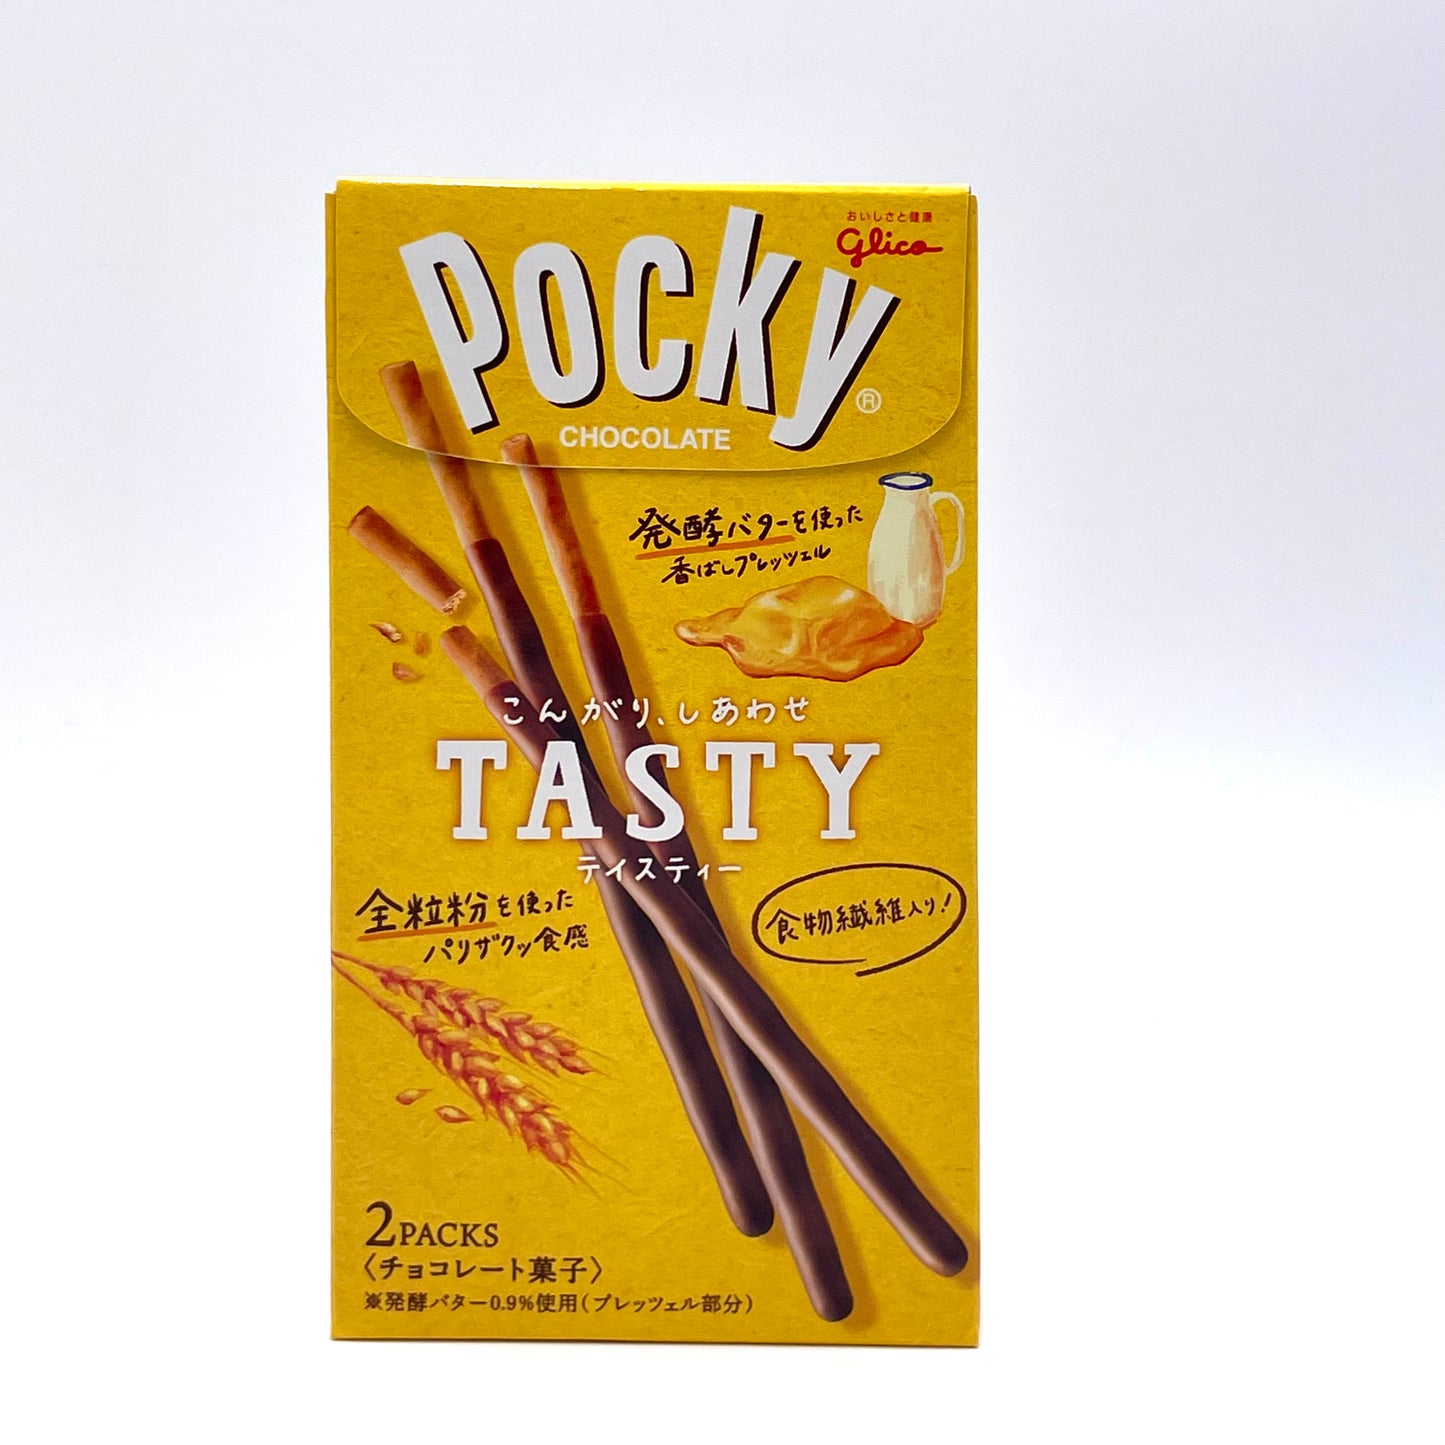 Glico Pocky Tasty Style 77.6g